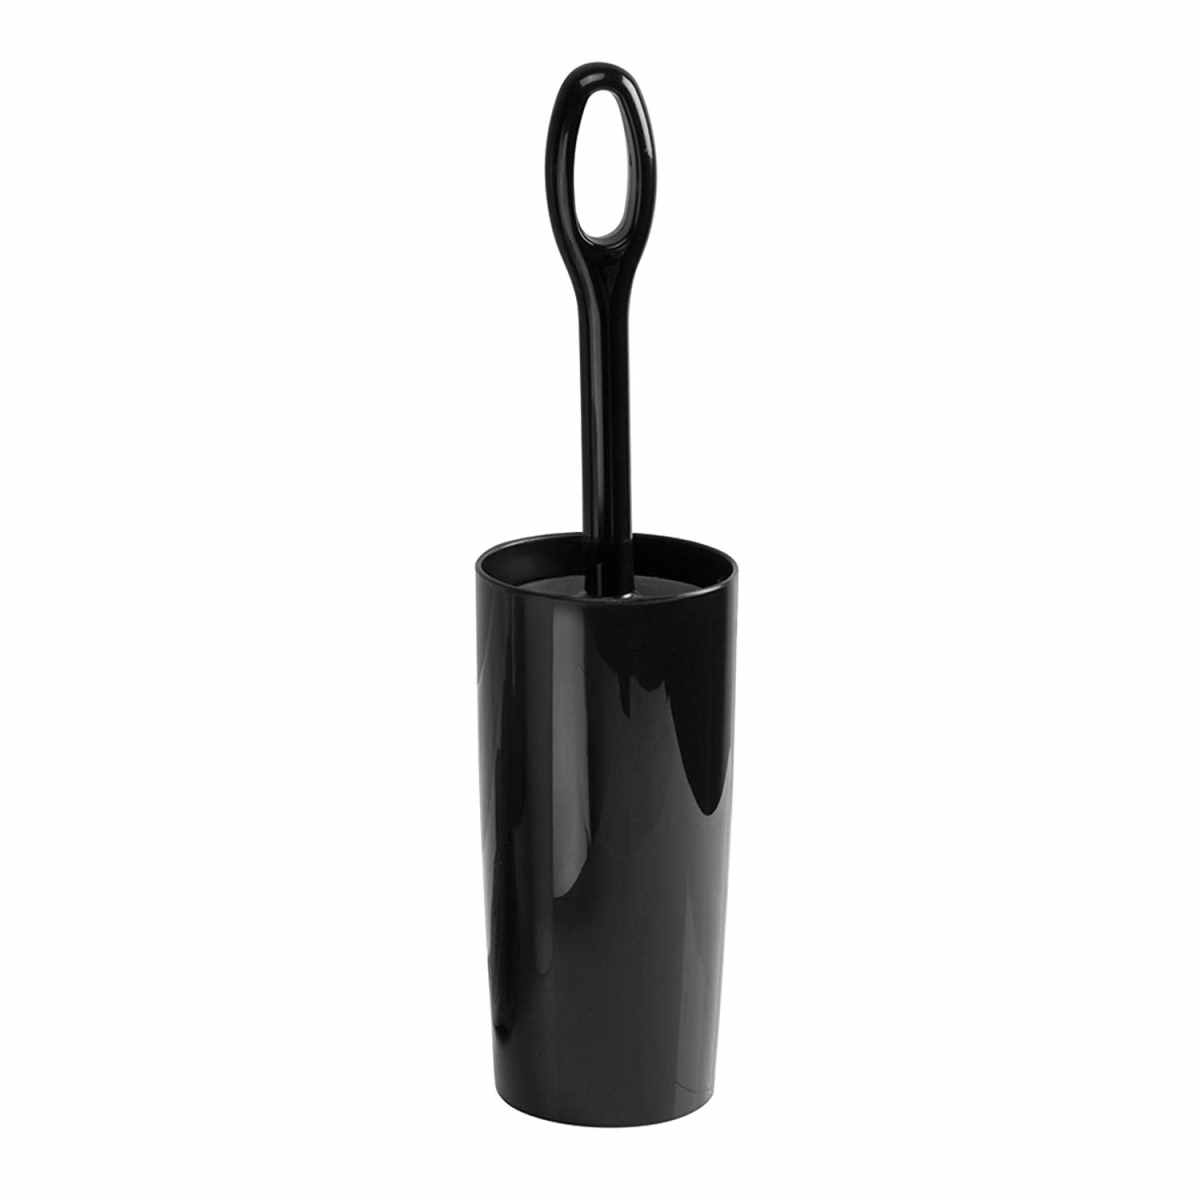 92602 15.7 X 3.9 In. Moda Toilet Bowl Brush & Holder - Black, Pack Of 4